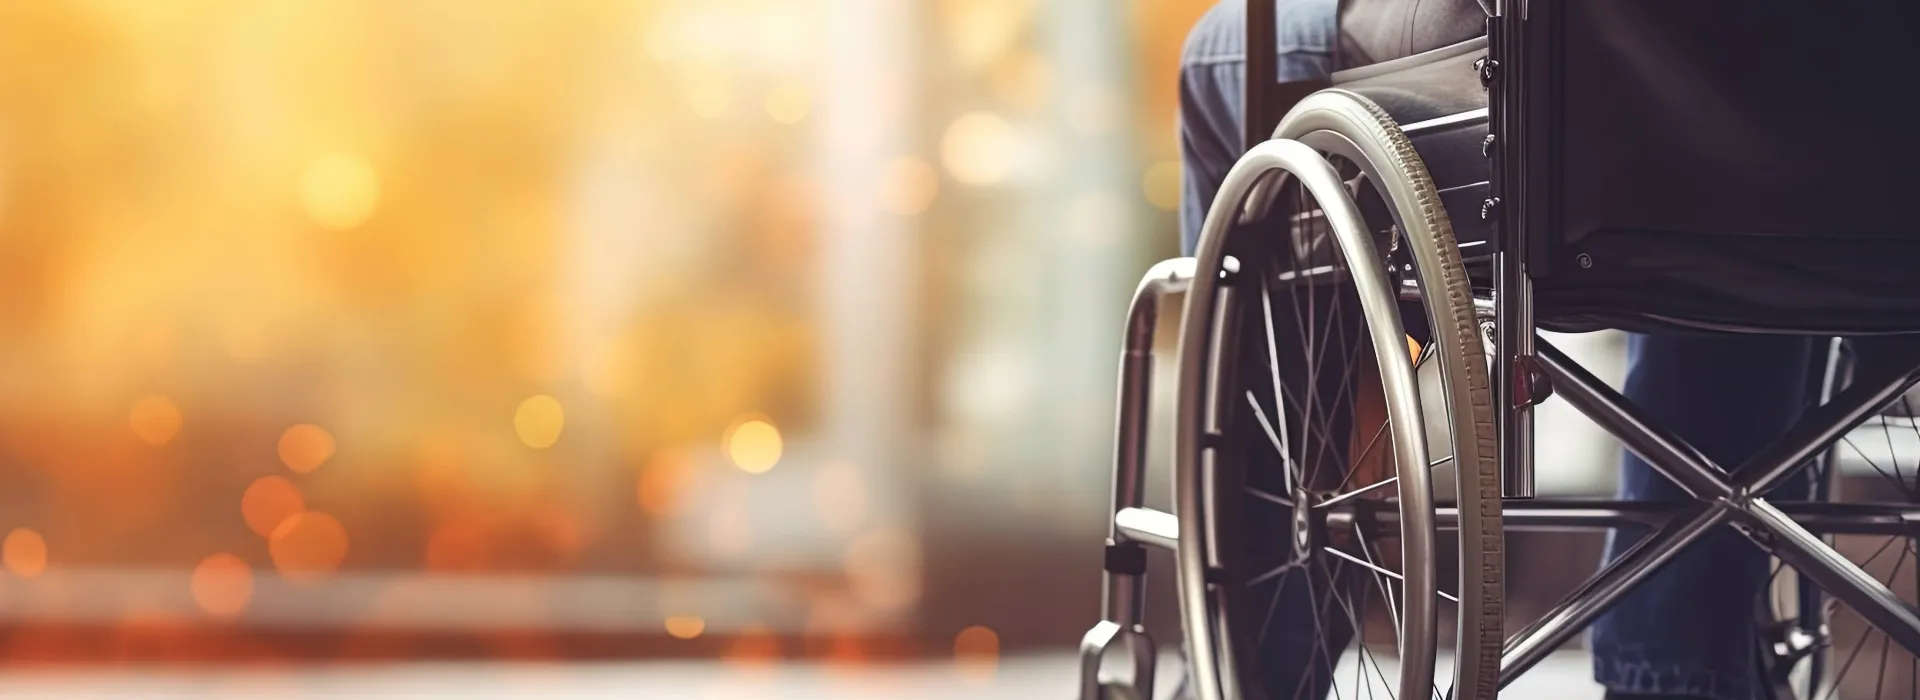 Nulens Verzekeringen - Overlijden en invaliditeit